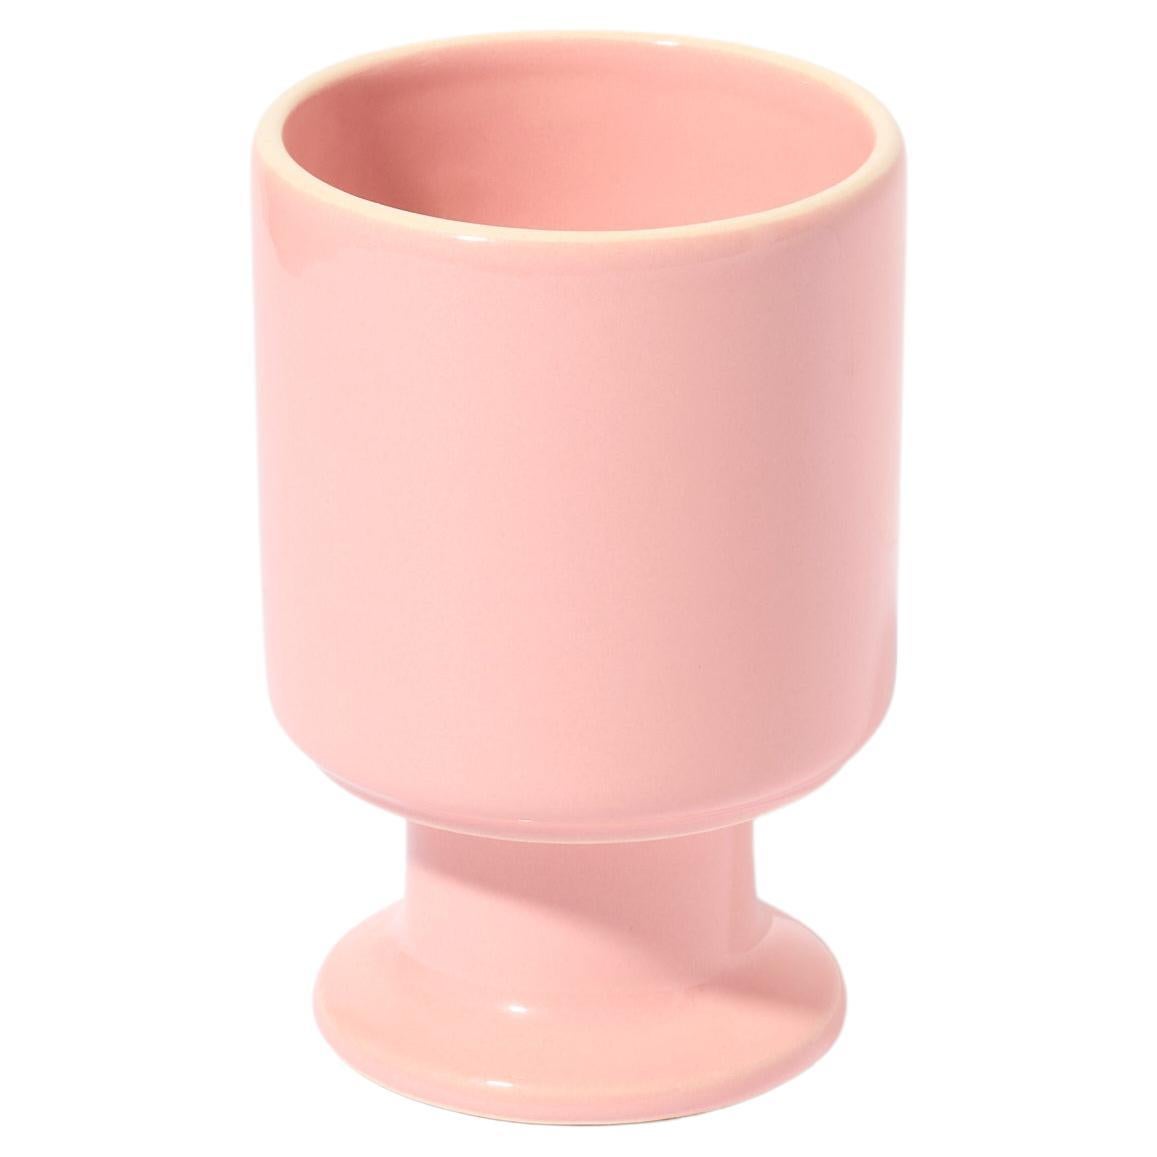 WIT Mug / Candy pink by Malwina Konopacka